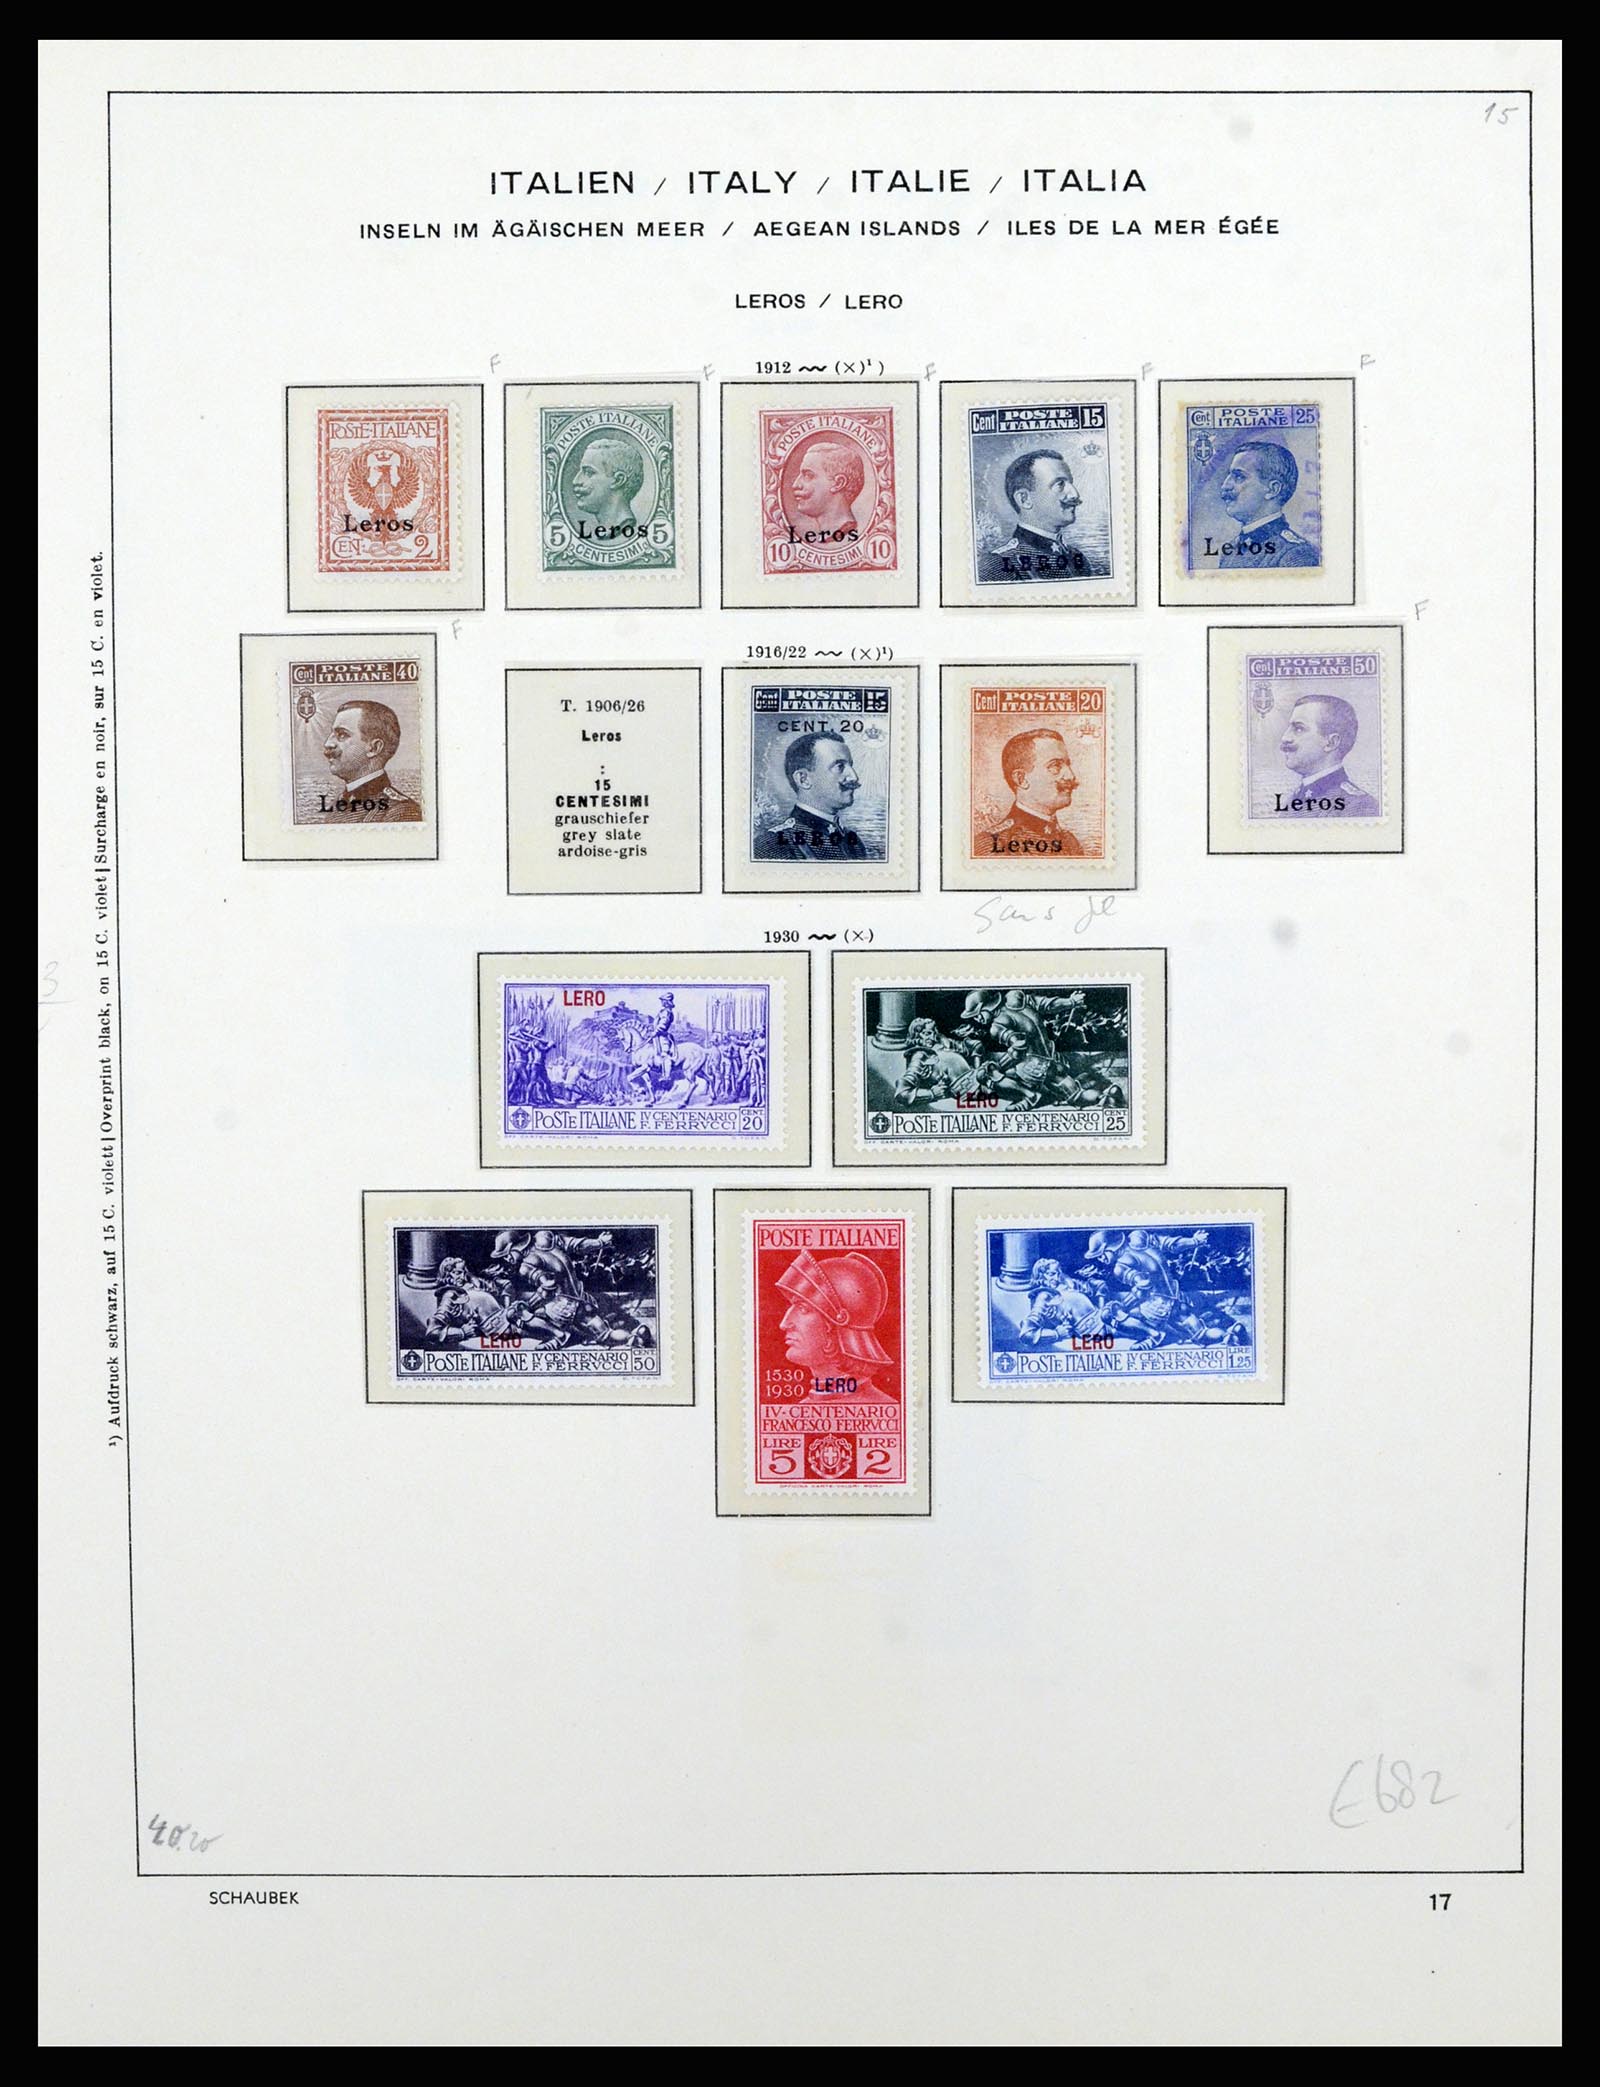 36577 043 - Stamp collection 36577 Italiaanse gebieden 1870-1940.